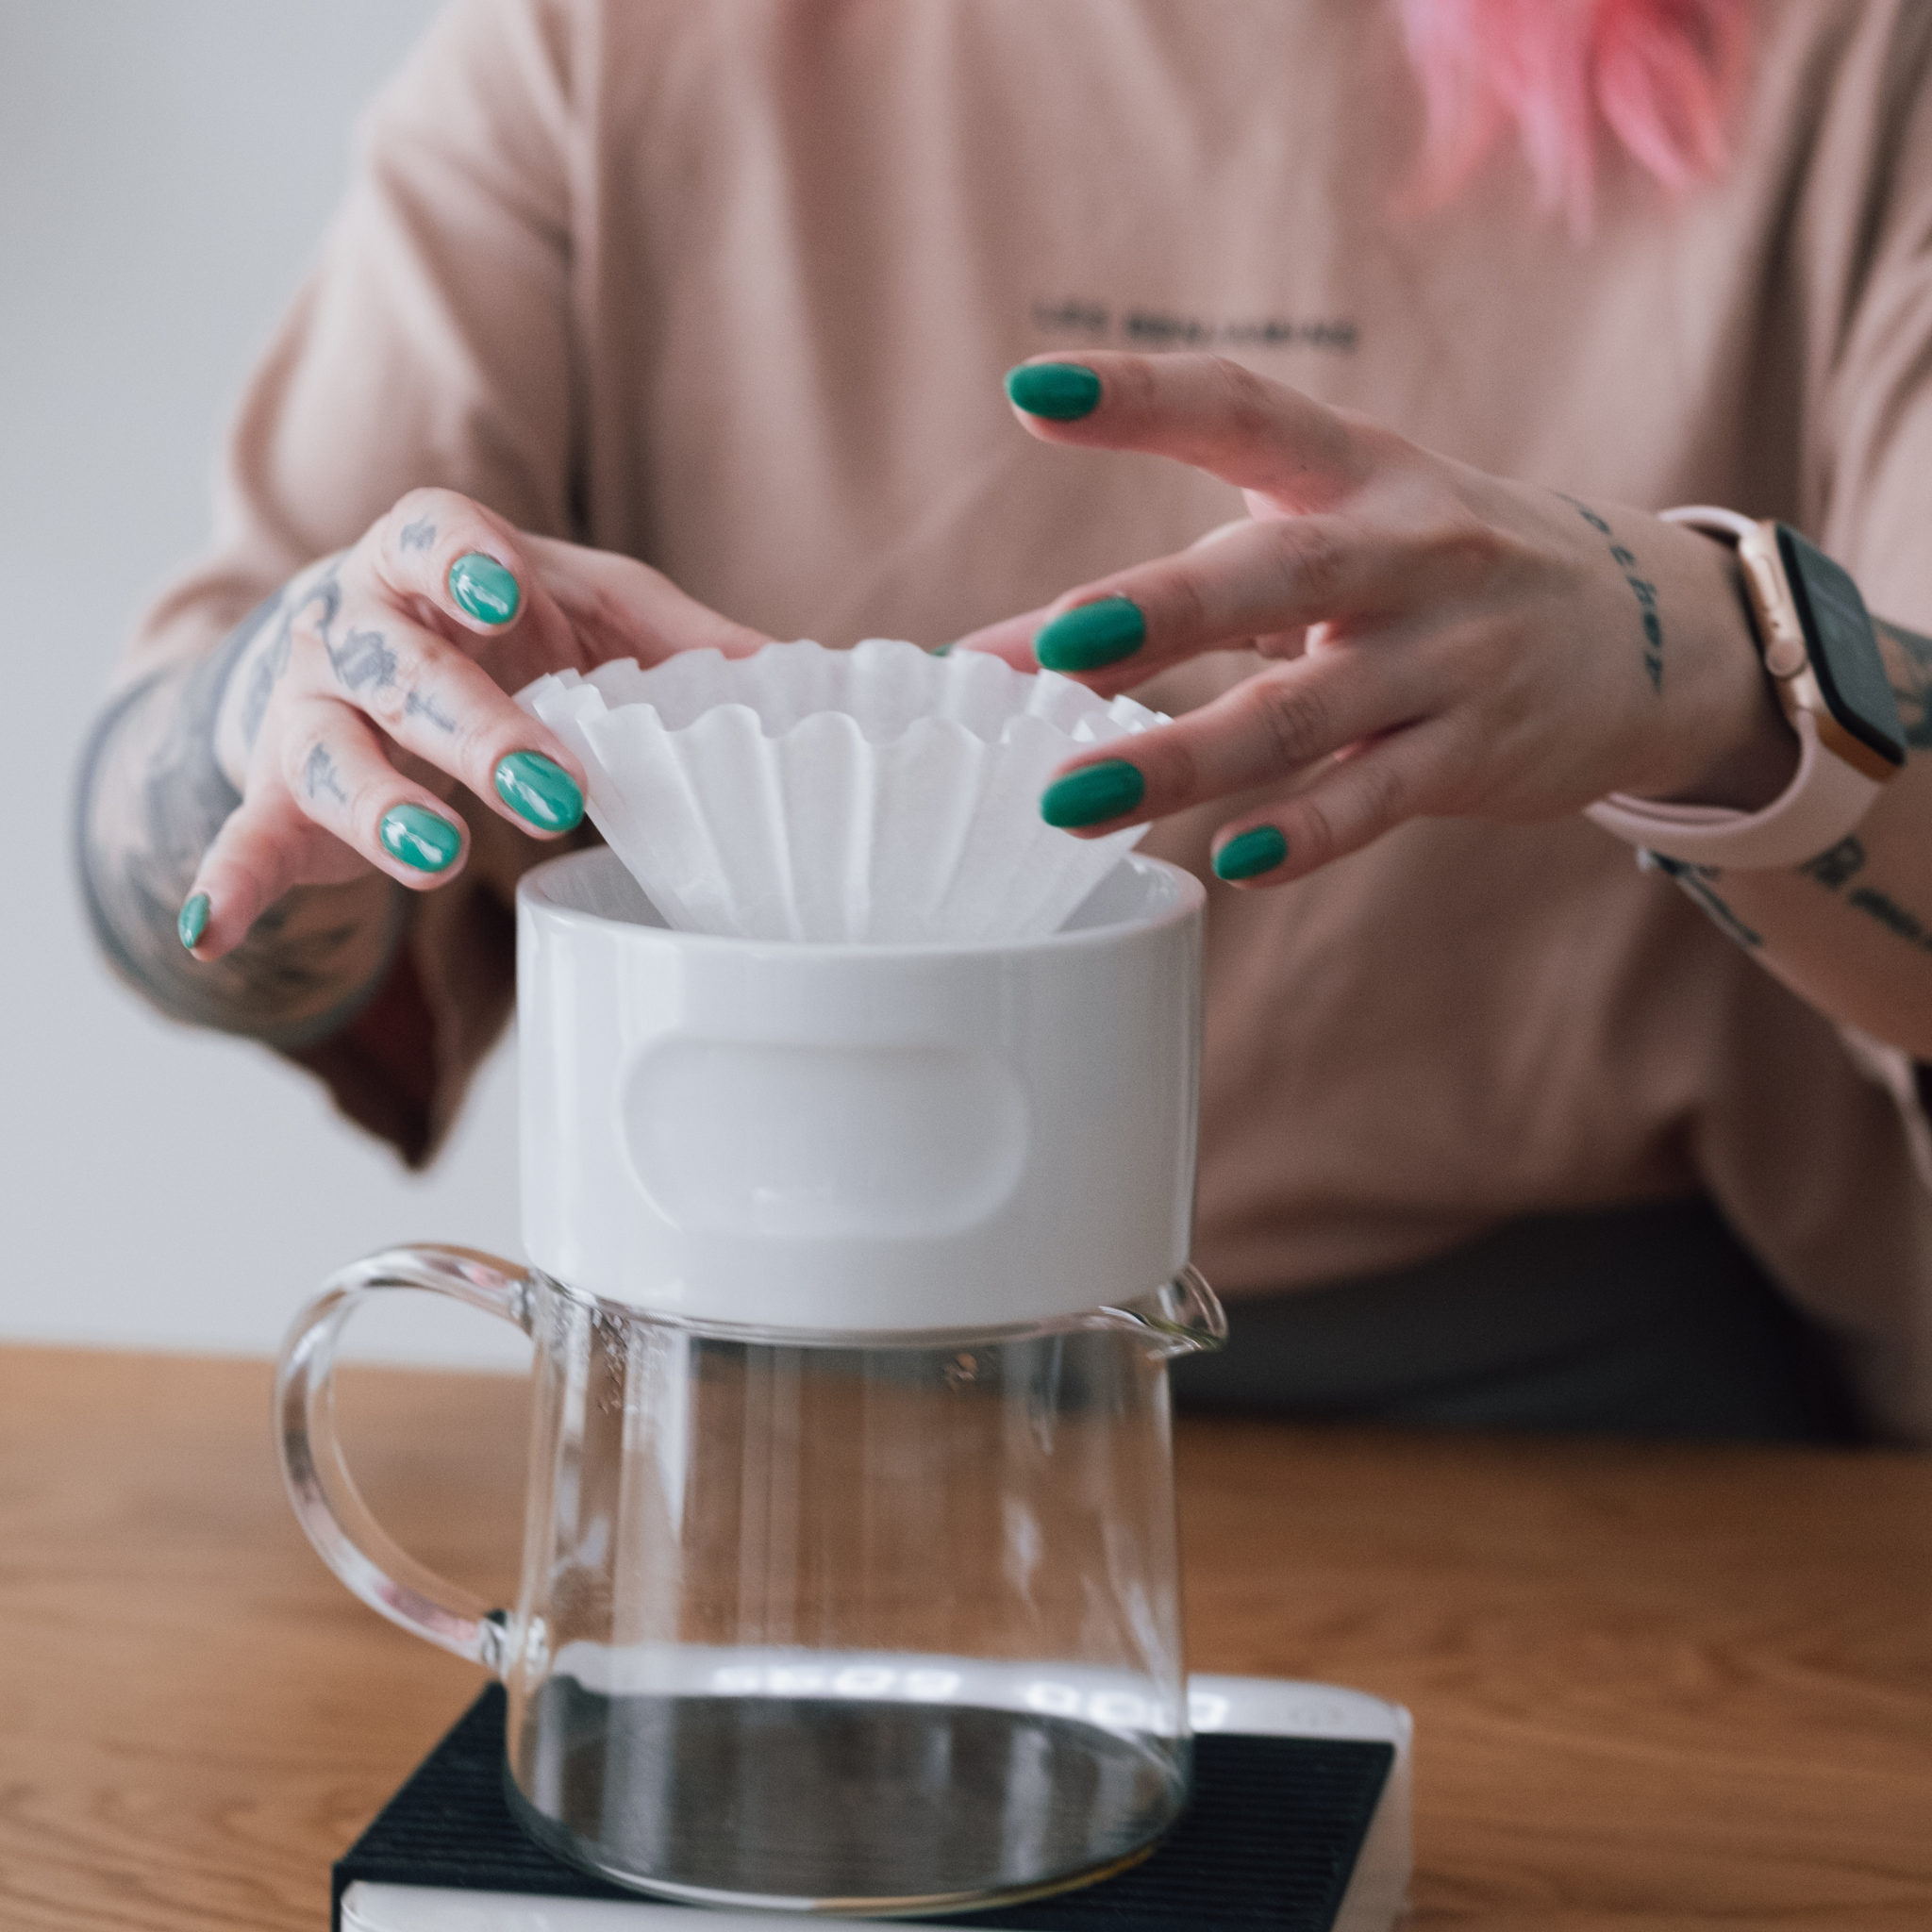 Etkin 2-Cup Coffee Dripper – Etkin Design